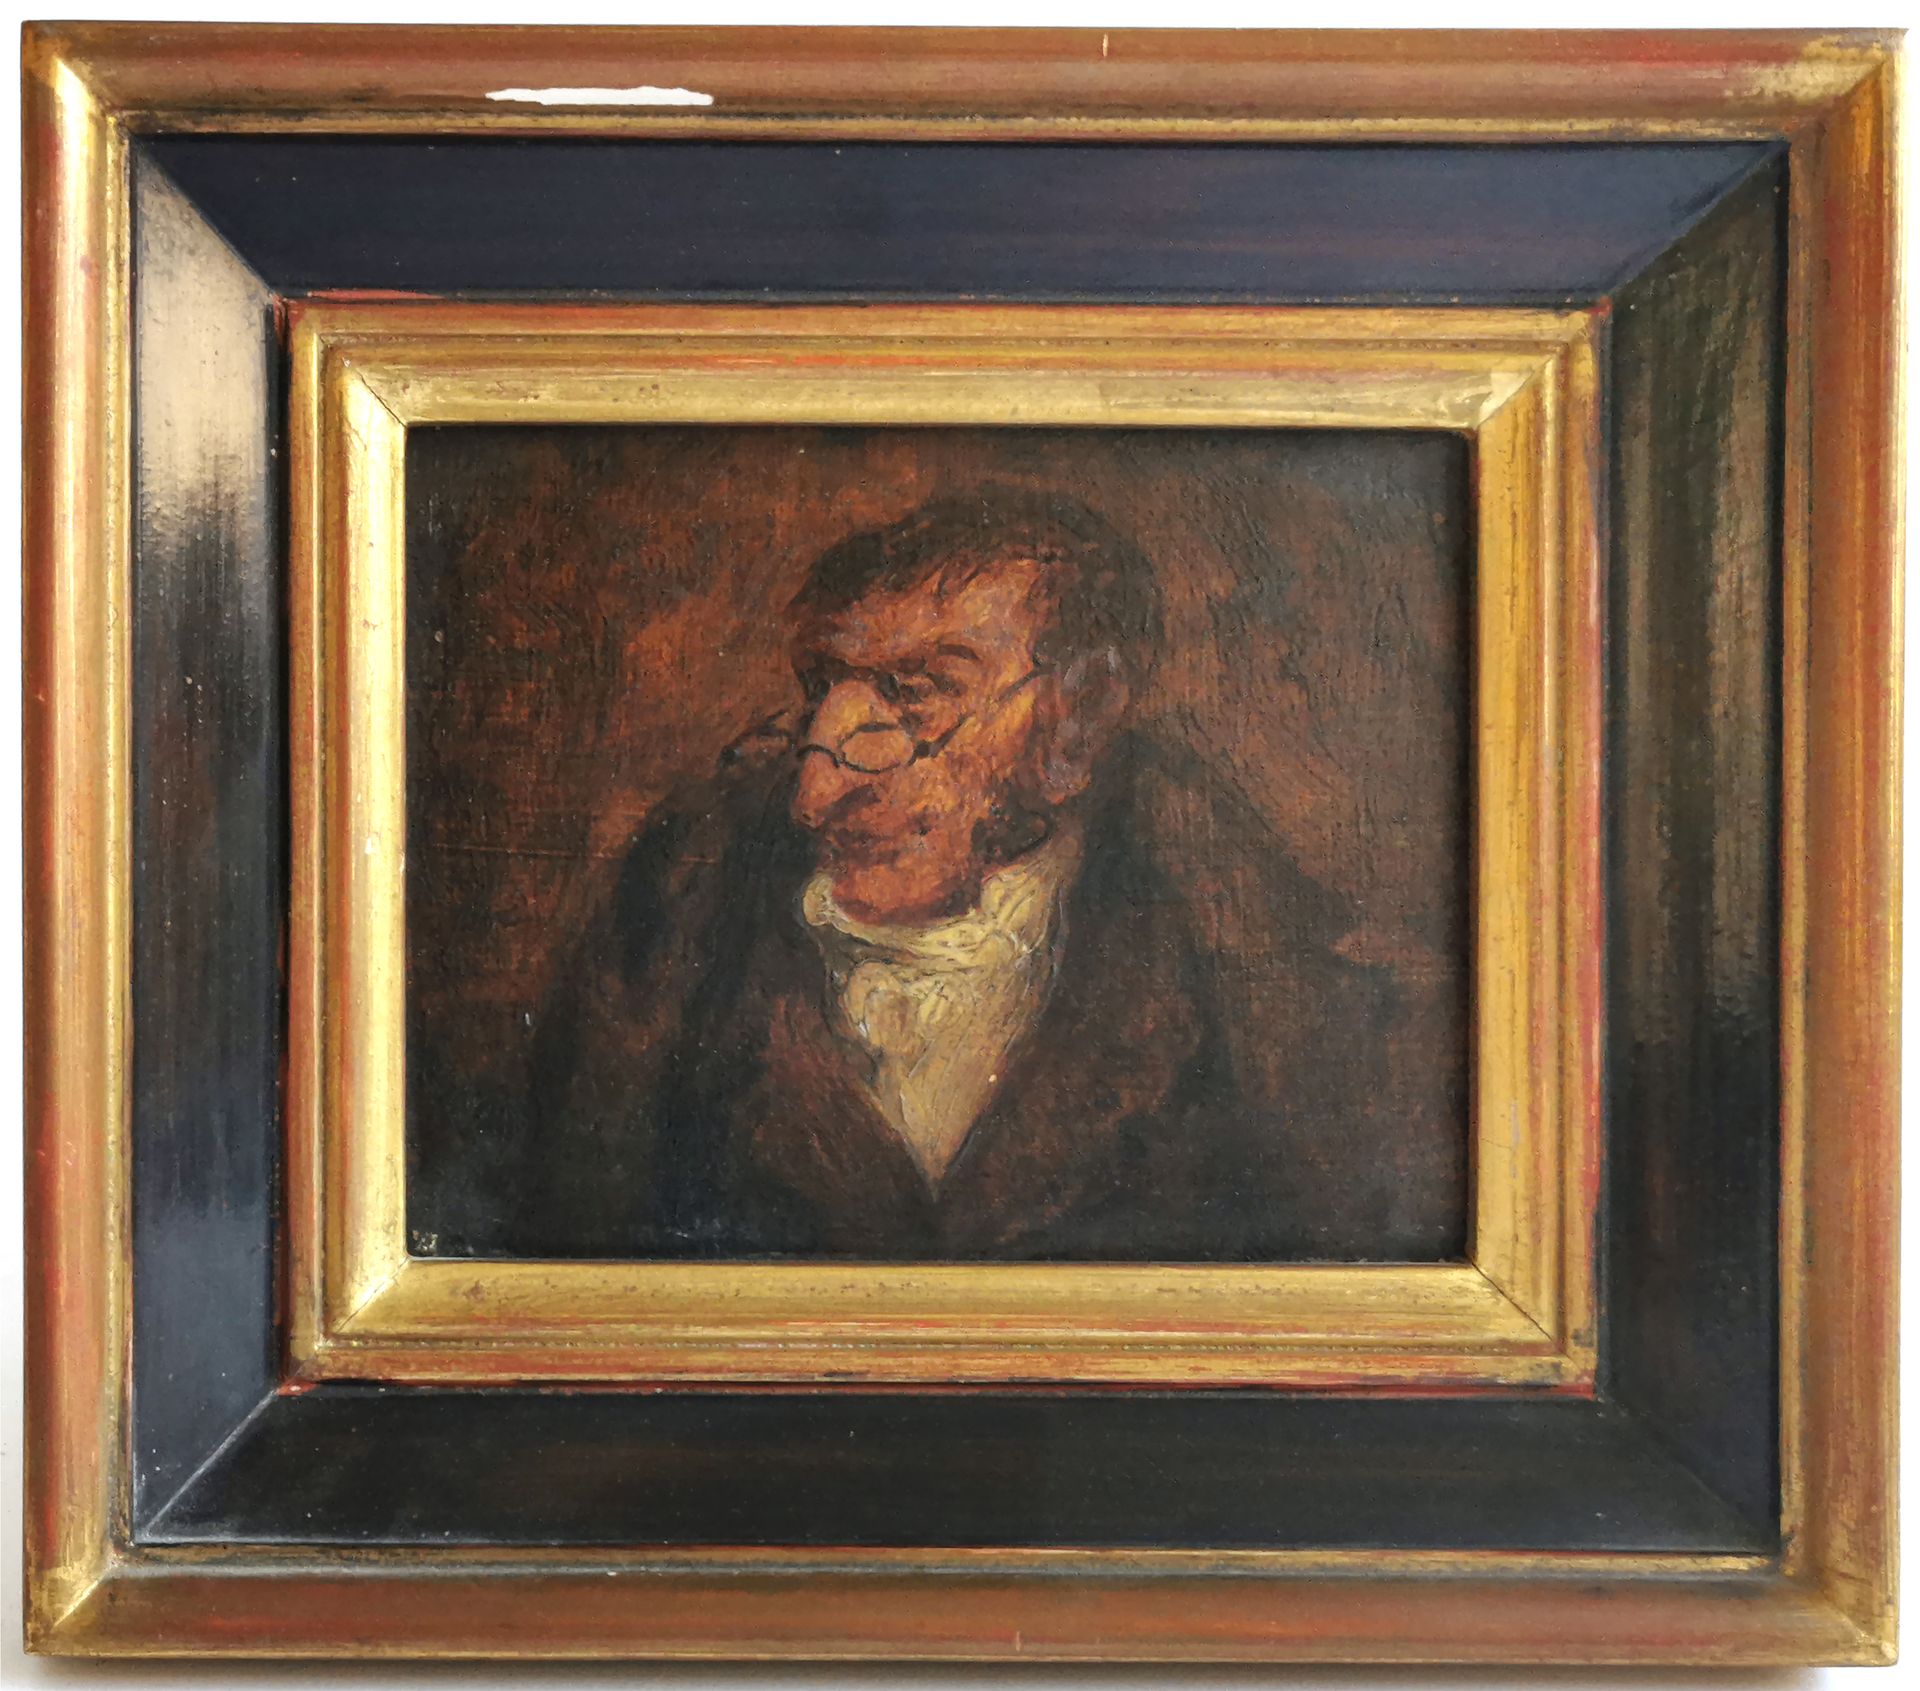 Null Nach Honoré DAUMIER (1808-1879)

Porträt eines Mannes mit Brille

Öl auf Ho&hellip;